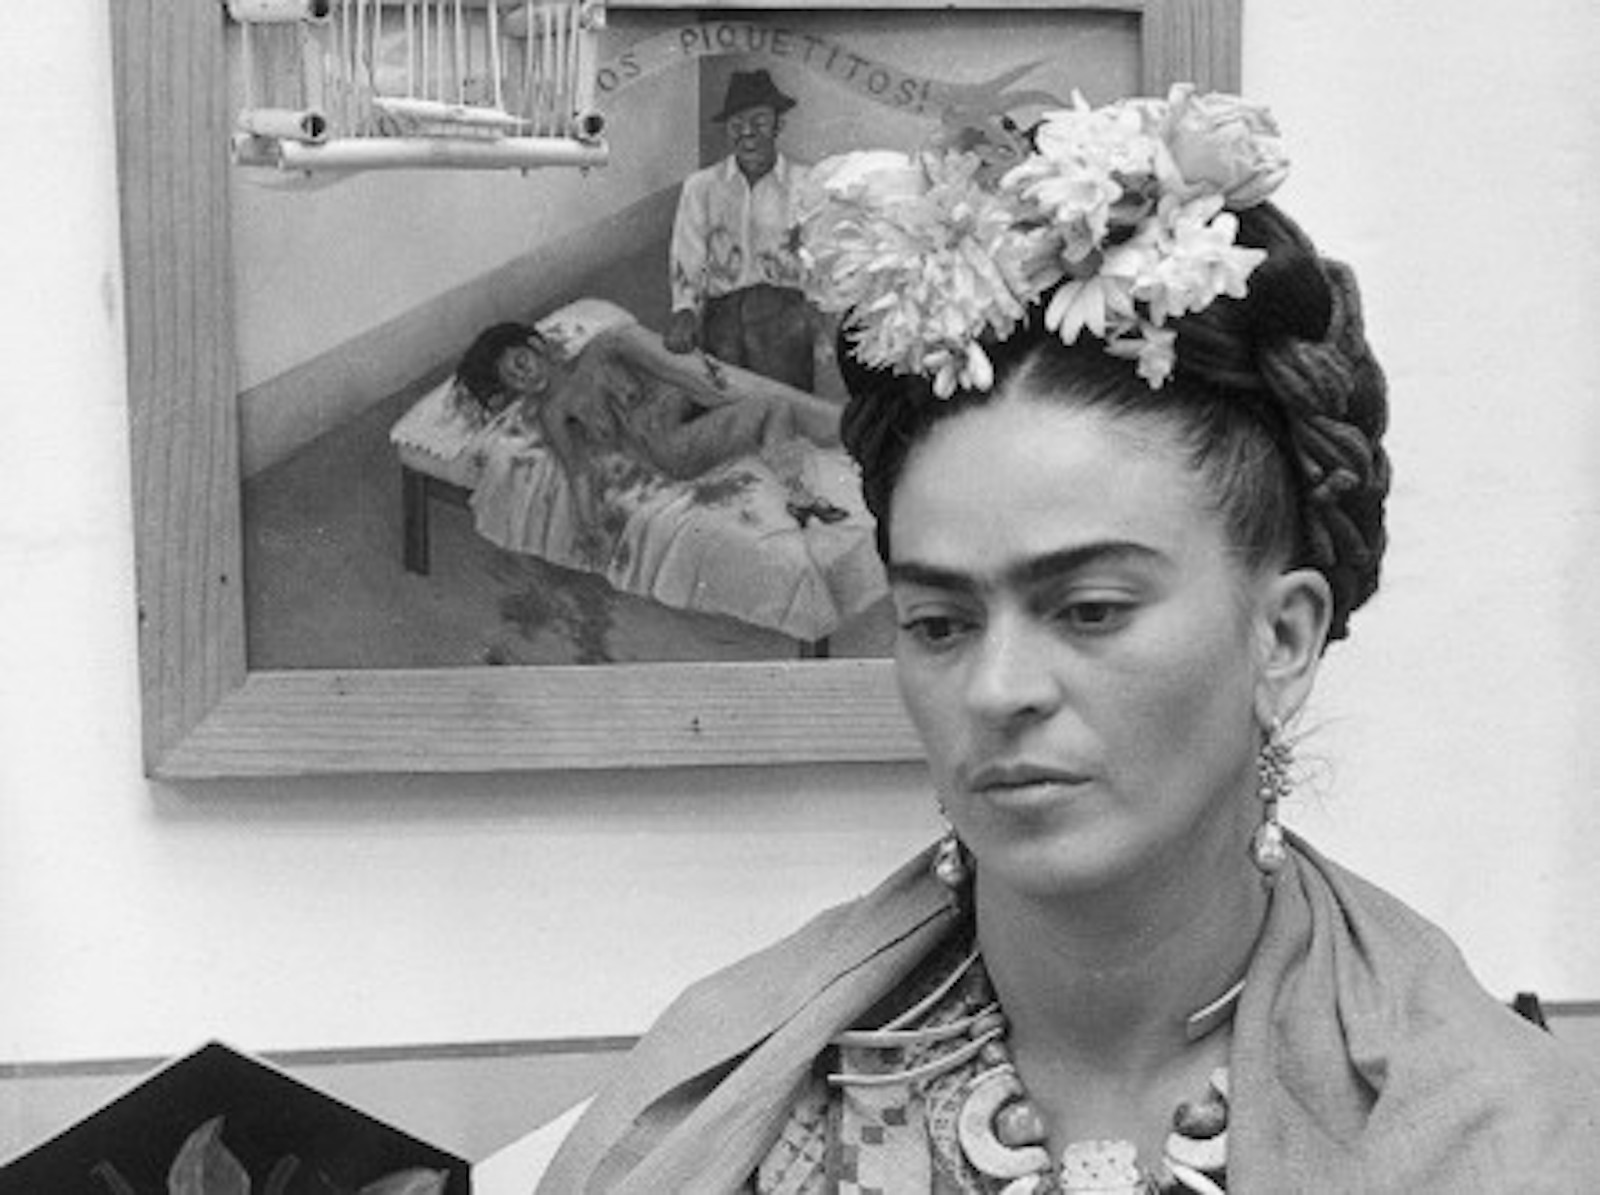 Quién era Frida Kahlo y qué hizo?